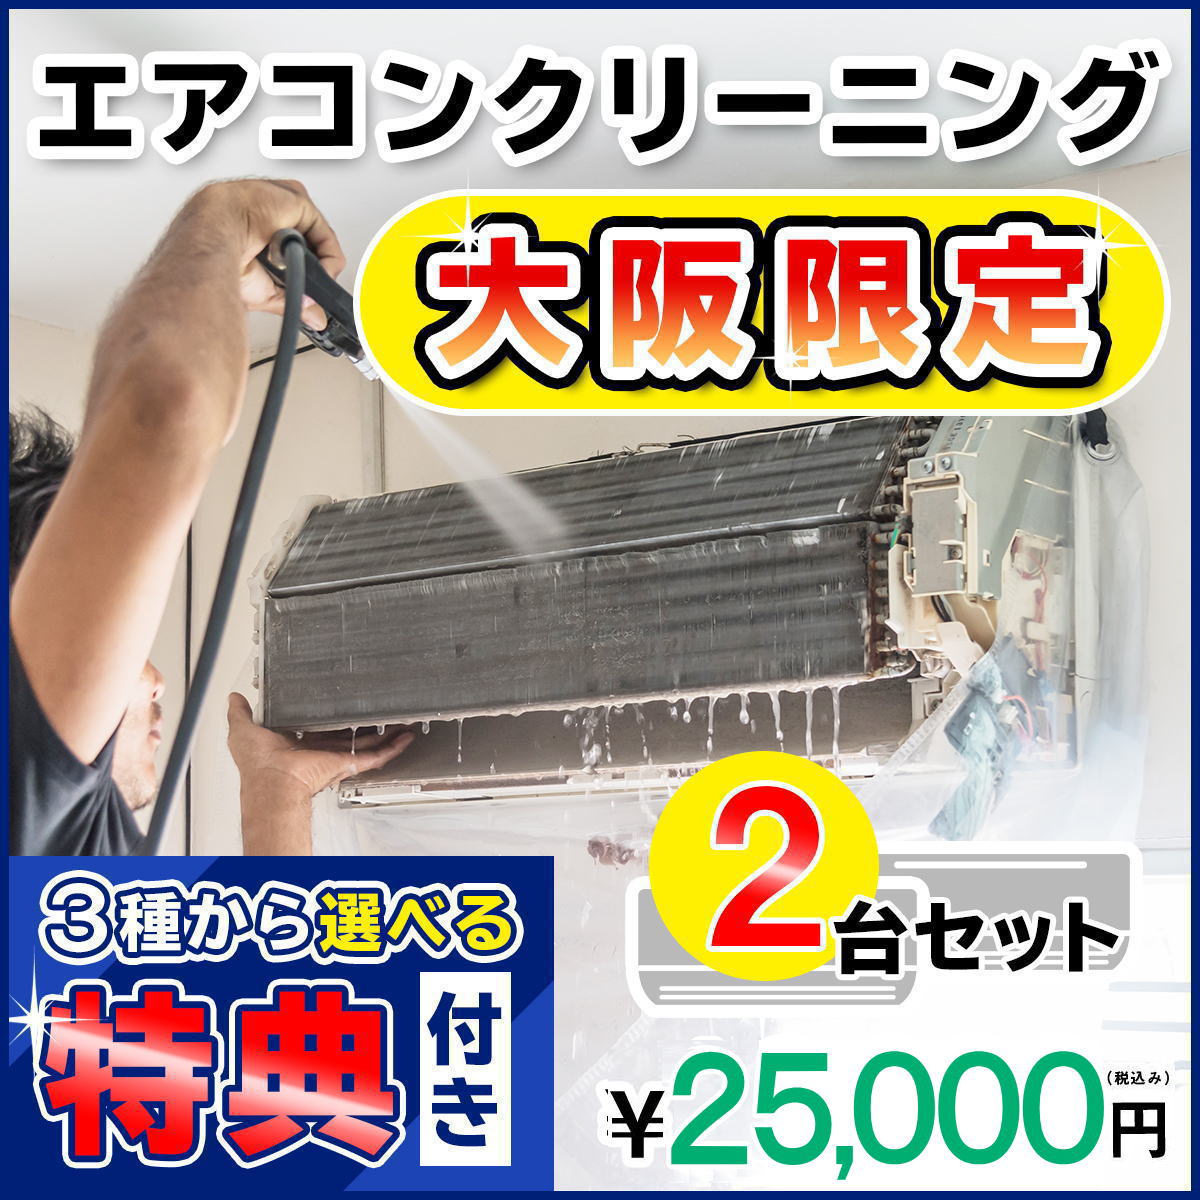 【大阪限定】エアコン クリーニング2台セットキ...の紹介画像3